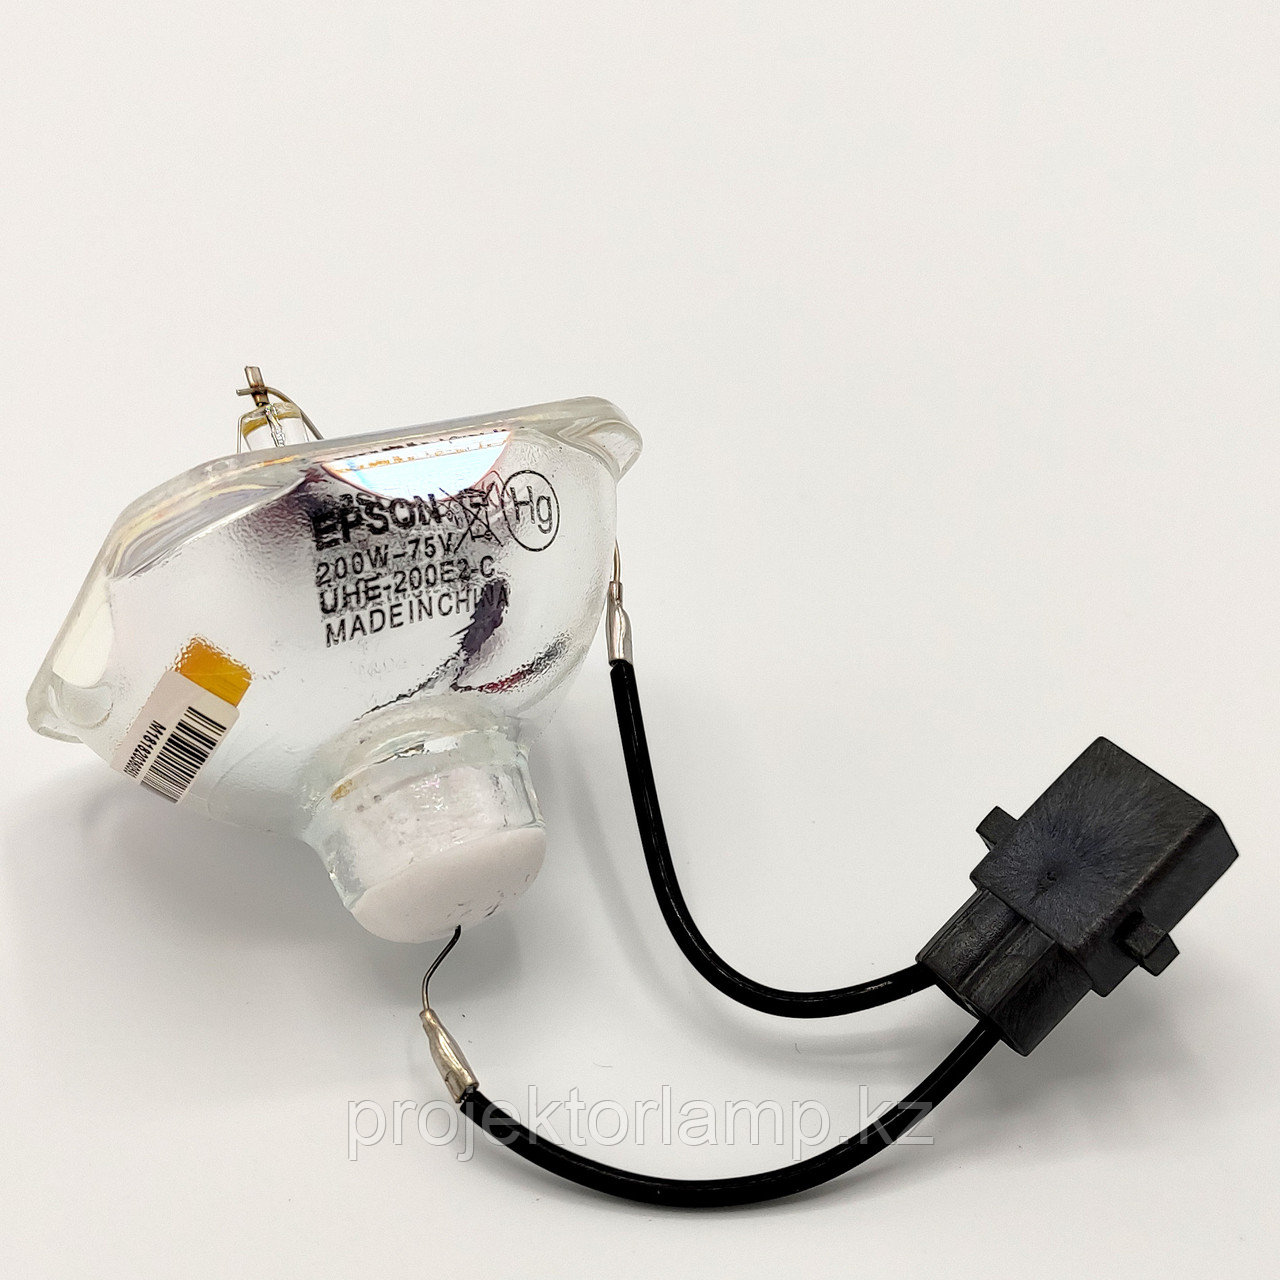 Лампа для проектора EPSON, ELPLP58, без корпуса